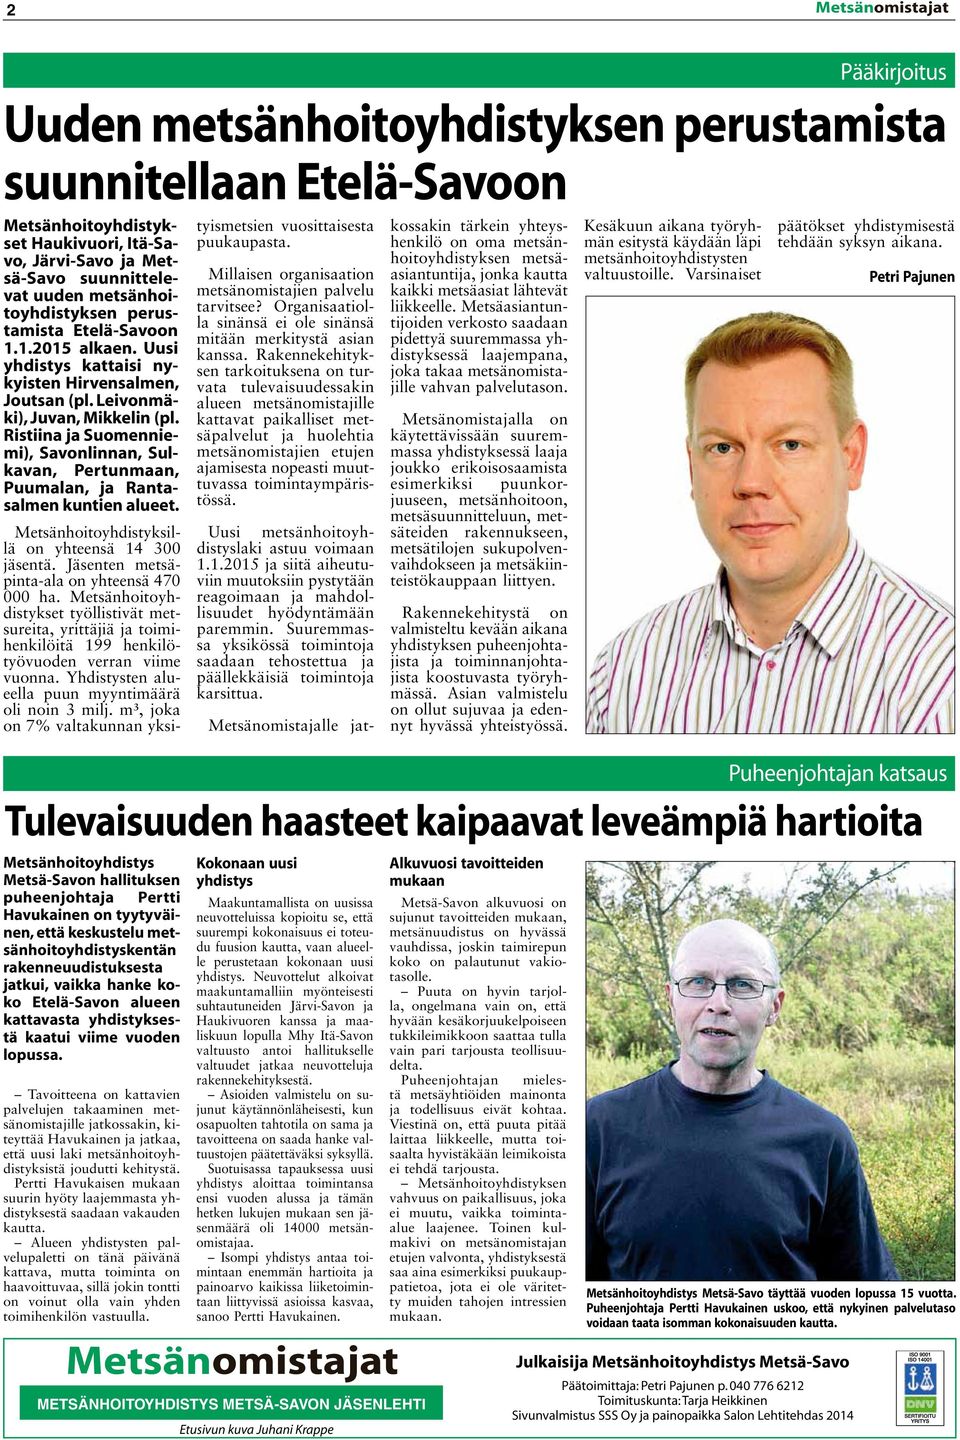 Ristiina ja Suomenniemi), Savonlinnan, Sulkavan, Pertunmaan, Puumalan, ja Rantasalmen kuntien alueet. Metsänhoitoyhdistyksillä on yhteensä 14 300 jäsentä.